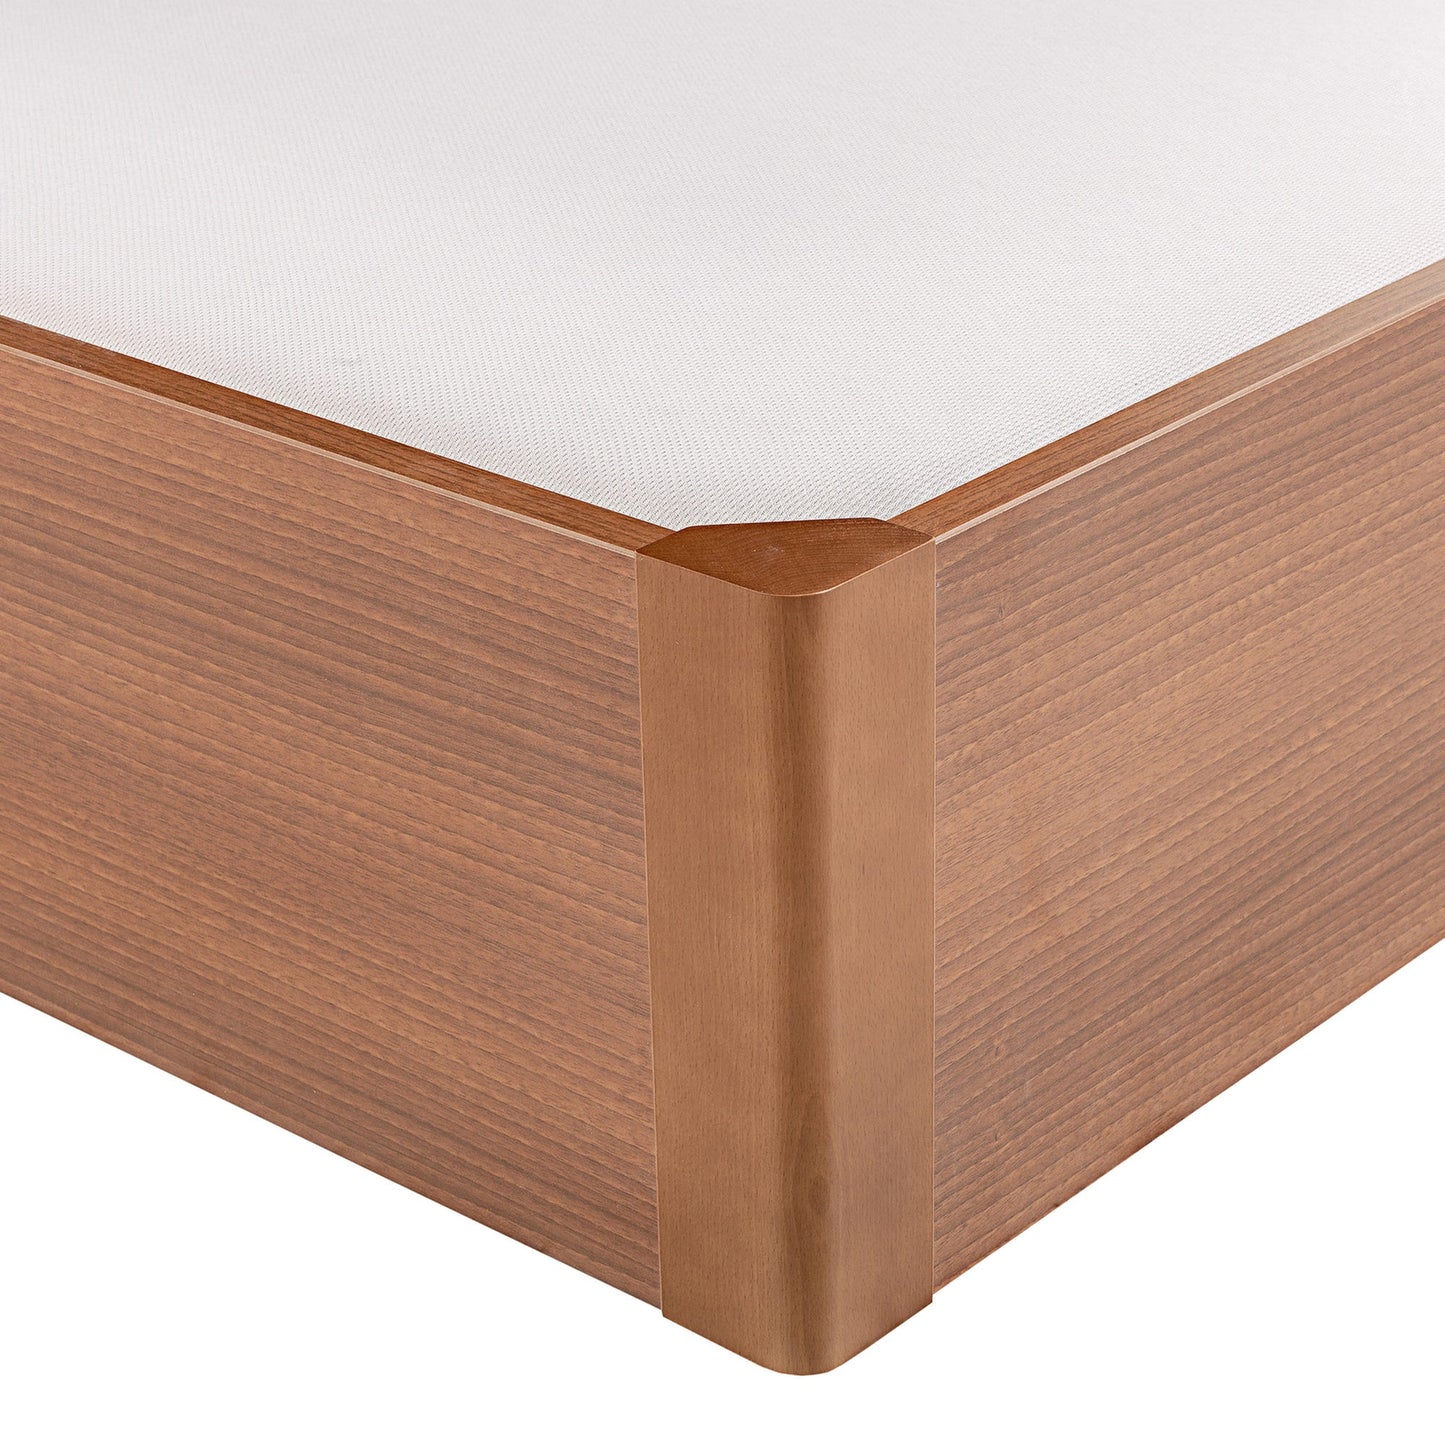 Canapé abatible de madera tapa única de color cerezo - DESIGN - 160x200